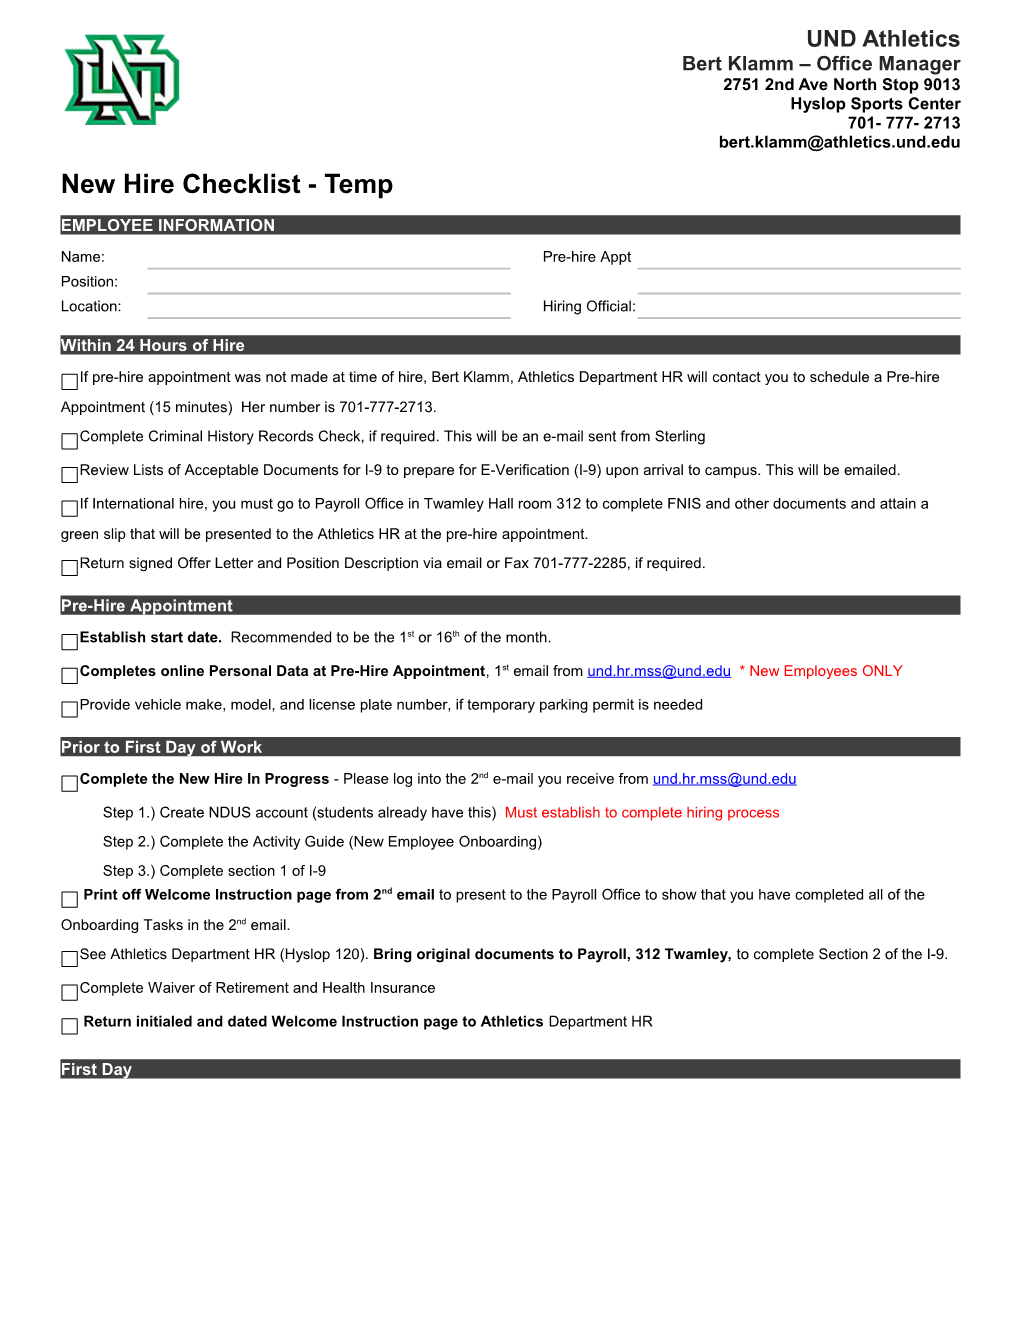 New Employee Orientation Checklist s2